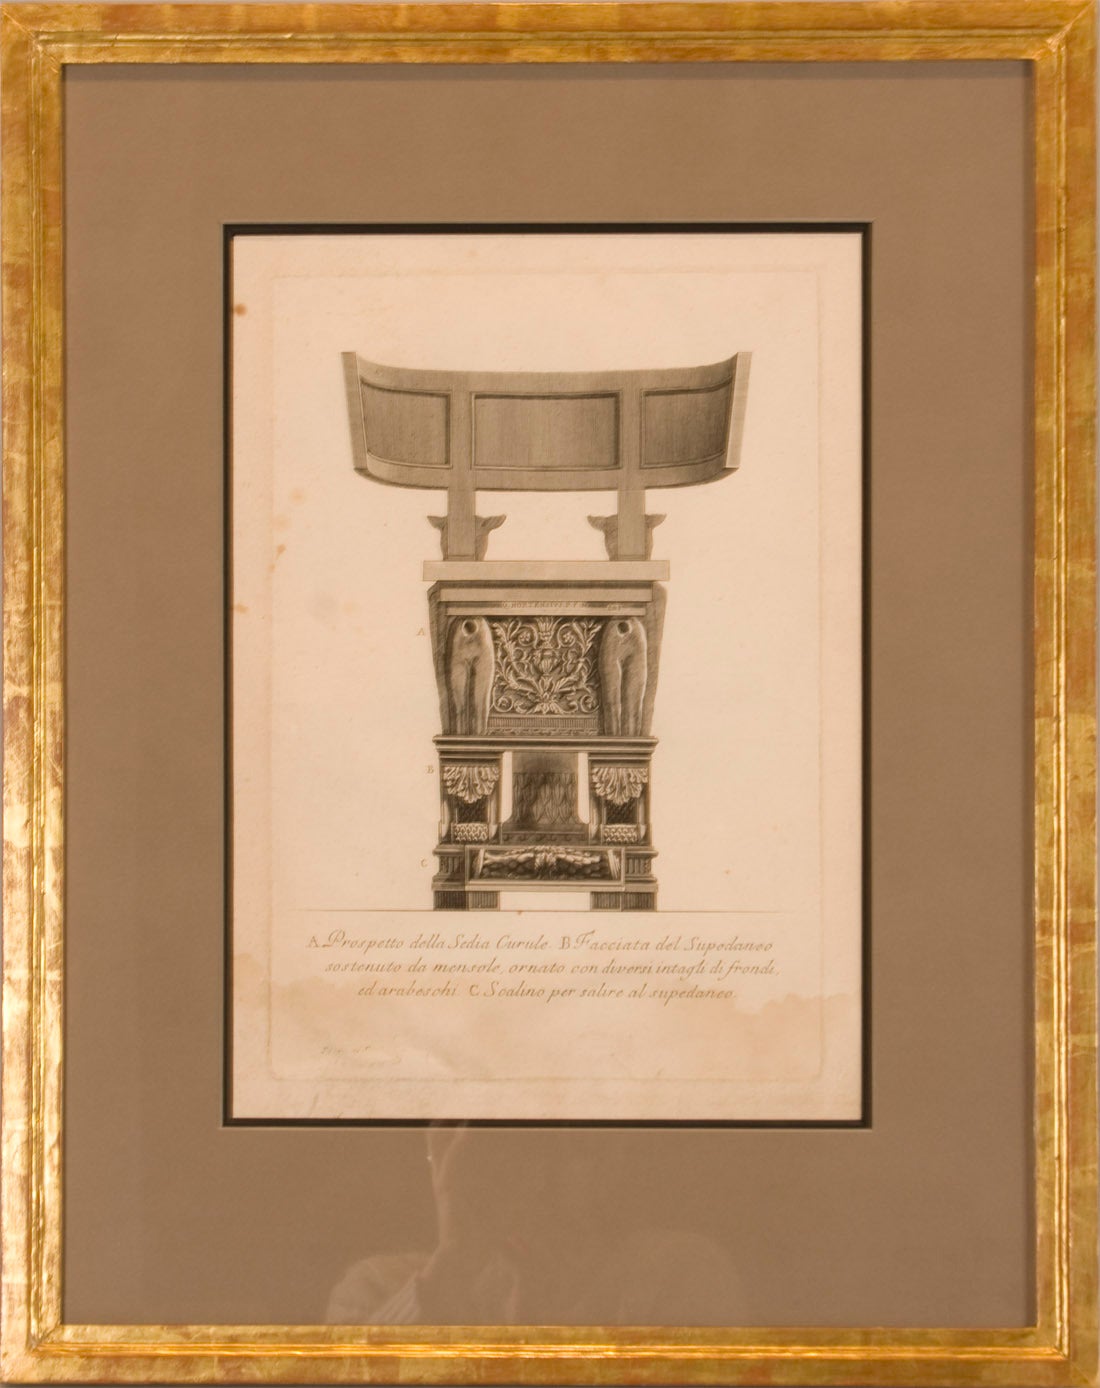 Ensemble d'eaux-fortes représentant des vues d'une chaise cérémonielle grecque en forme de klismos. 
Dans la cinquantaine, G.B. Piranesi s'intéresse à l'archéologie et étudie dans le sud de l'Italie où il réalise des dessins d'architecture grecque.